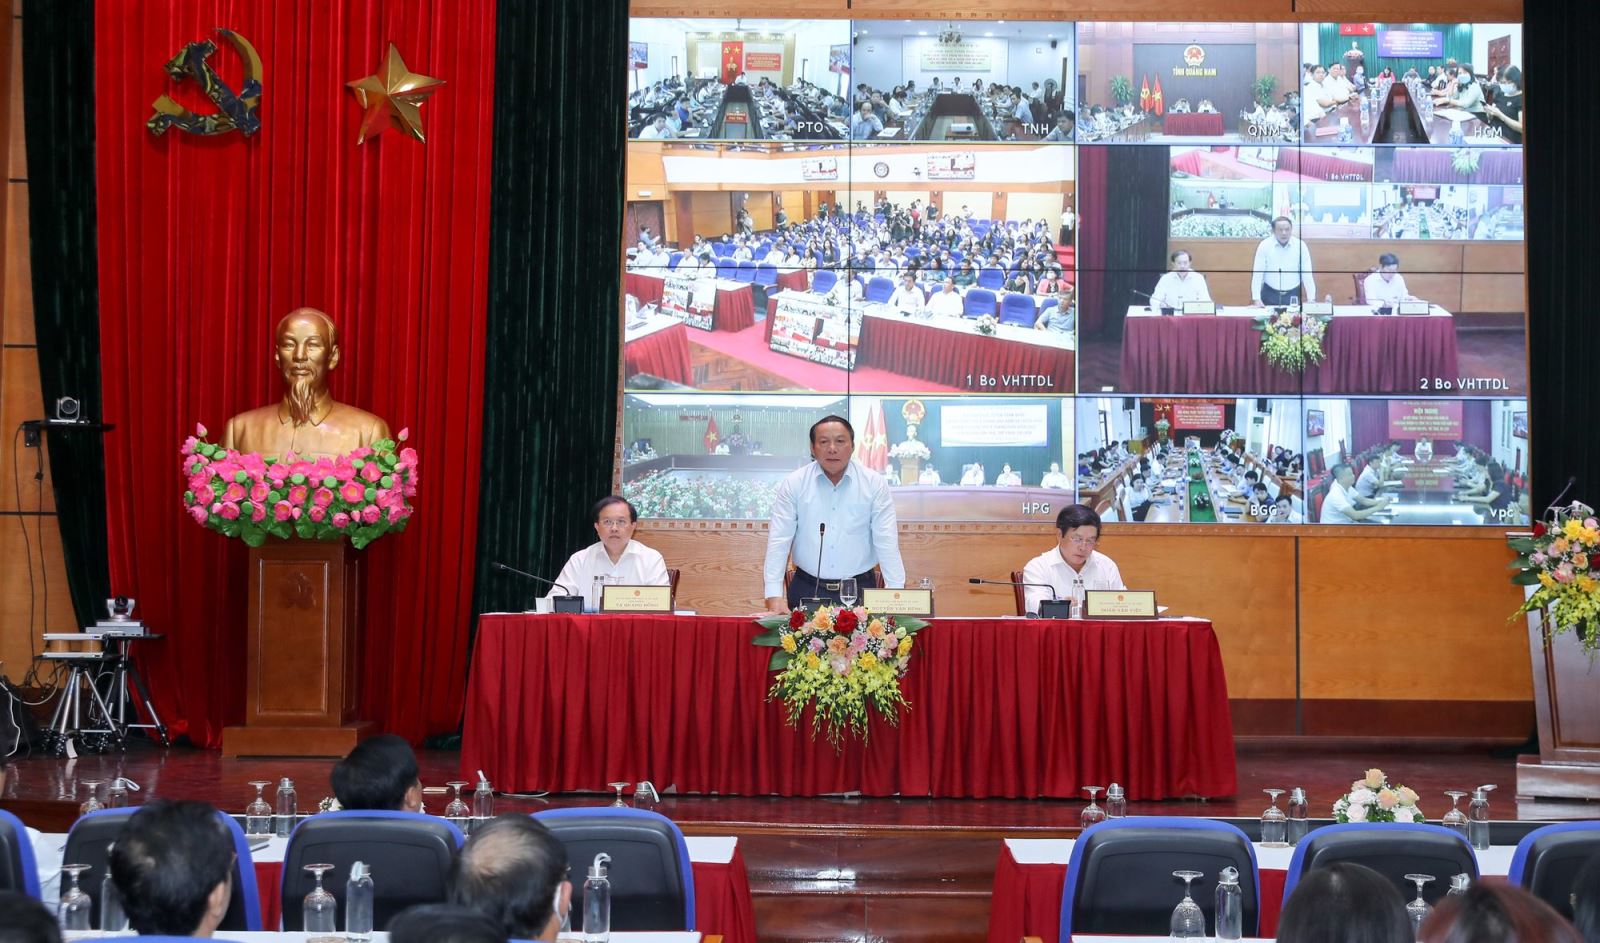 Bộ trưởng Nguyễn Văn Hùng: "Toàn ngành đã gặt hái được những thành công, trong đó có những điểm sáng quan trọng"